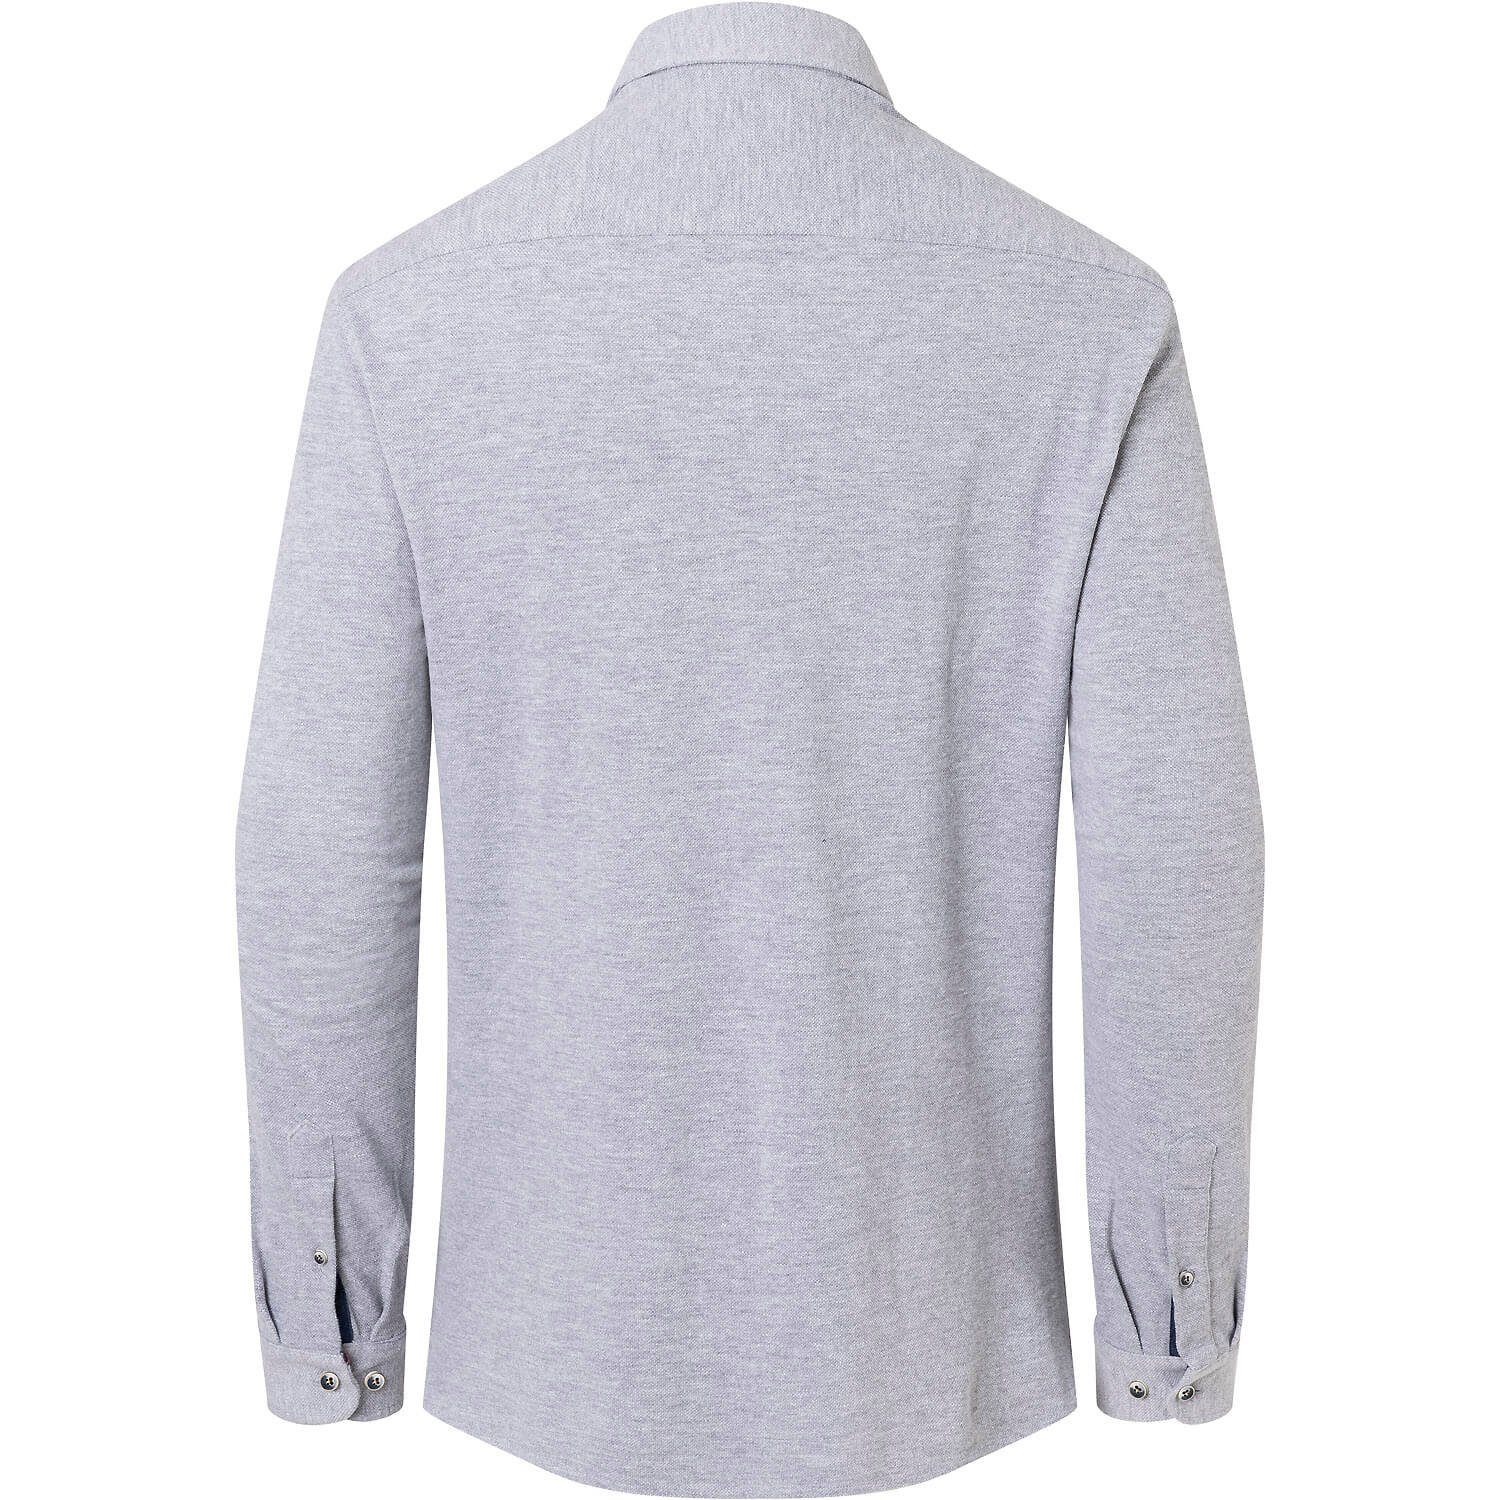 Trachtenshirt Shirt Grau Wiesnkönig Piqué K20 Benedikt